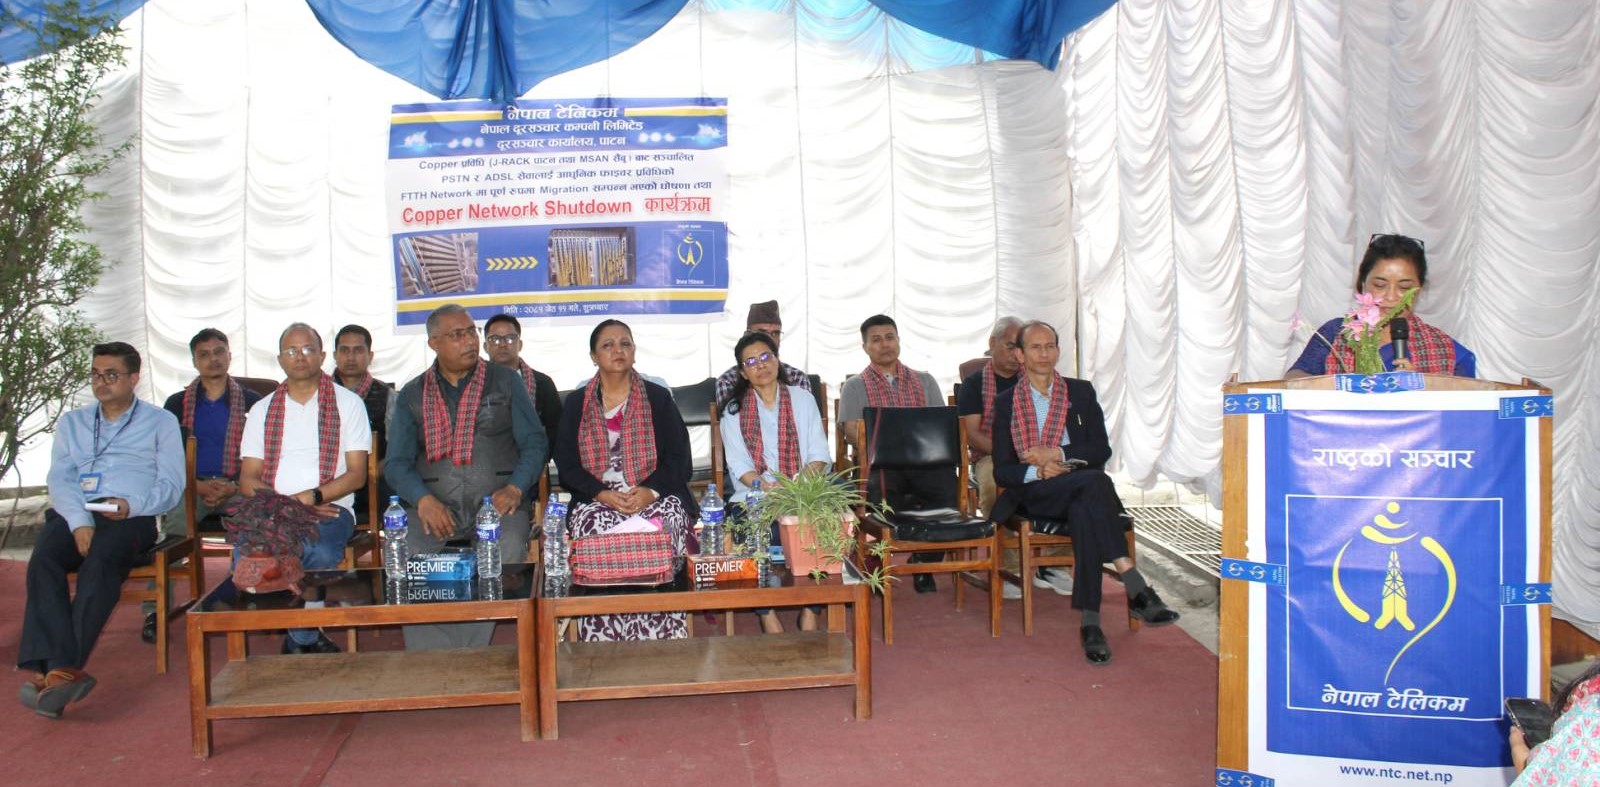 नेपाल टेलिकमद्वारा पाटन र सैंवुमा कपर प्रविधिलाई फाइबर टु दि होमको स्तरोन्नति